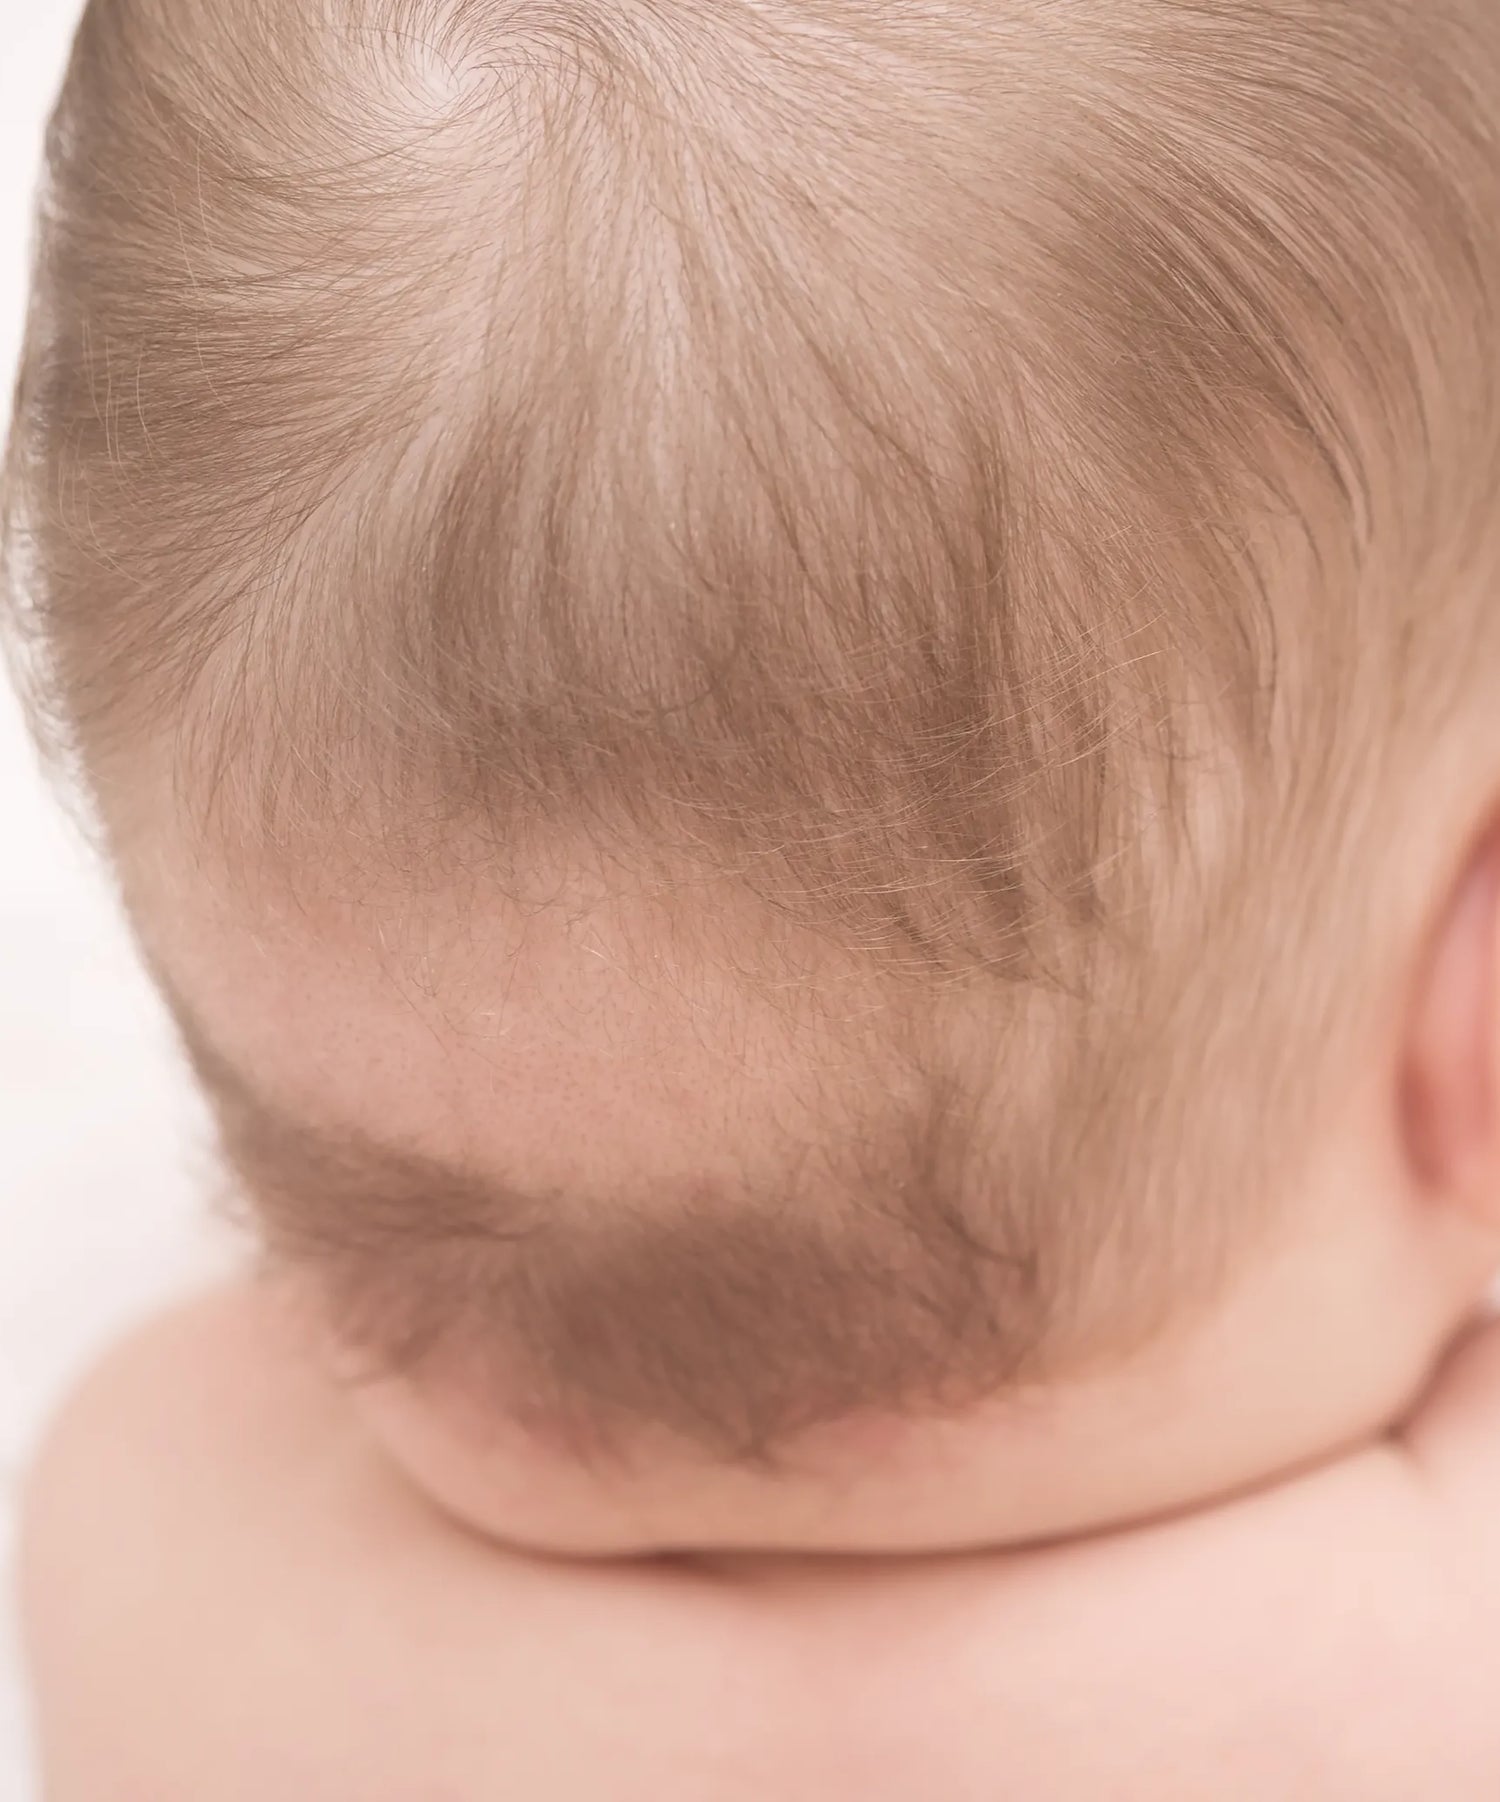 baby geheimratsecken hilfe für eltern bei haarausfall kind